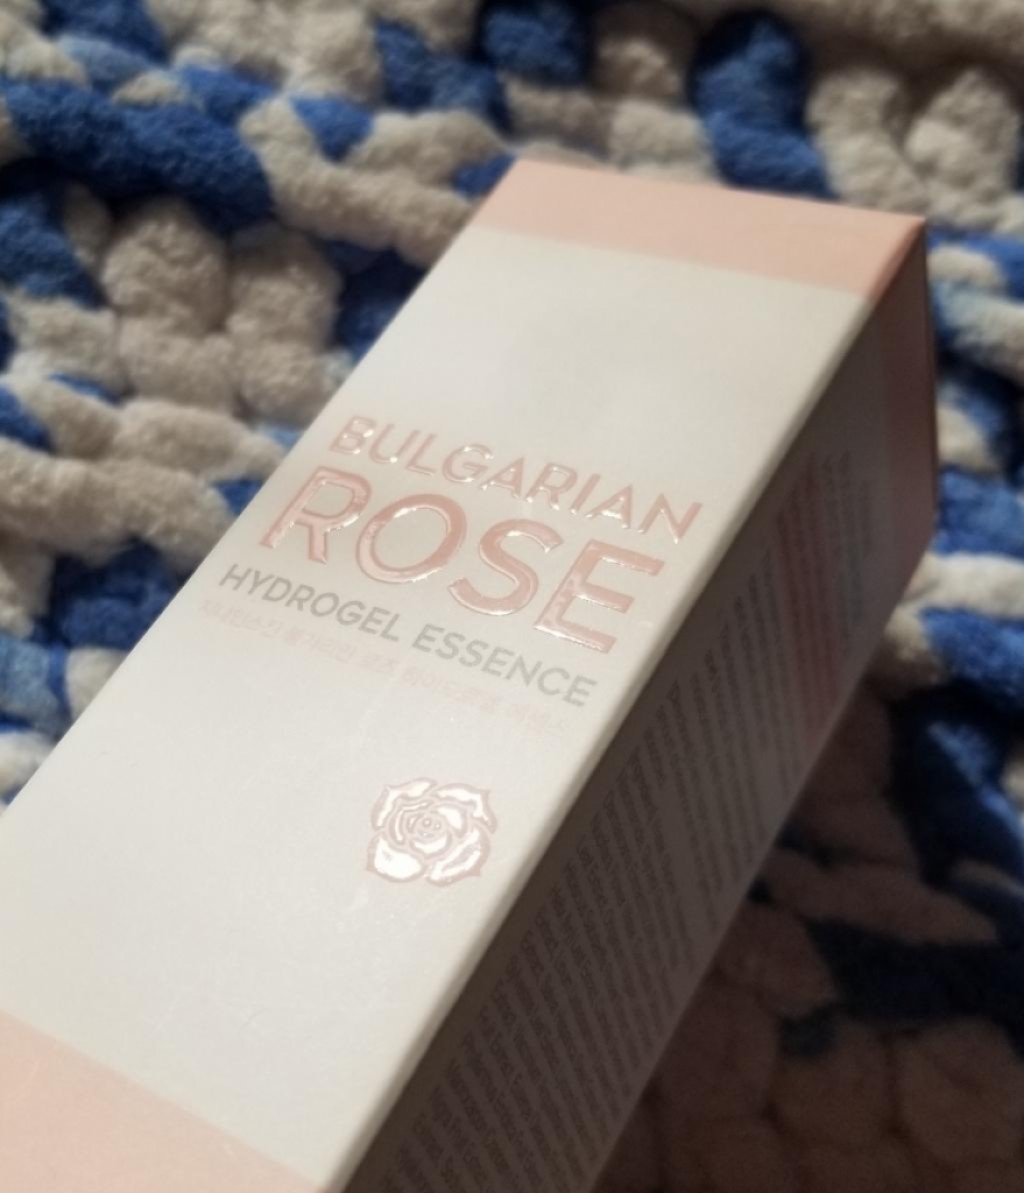 G9Skin Bulgarian Rose Hydrogel Essence Гидрогелевая эссенция с экстрактом болгарской розы